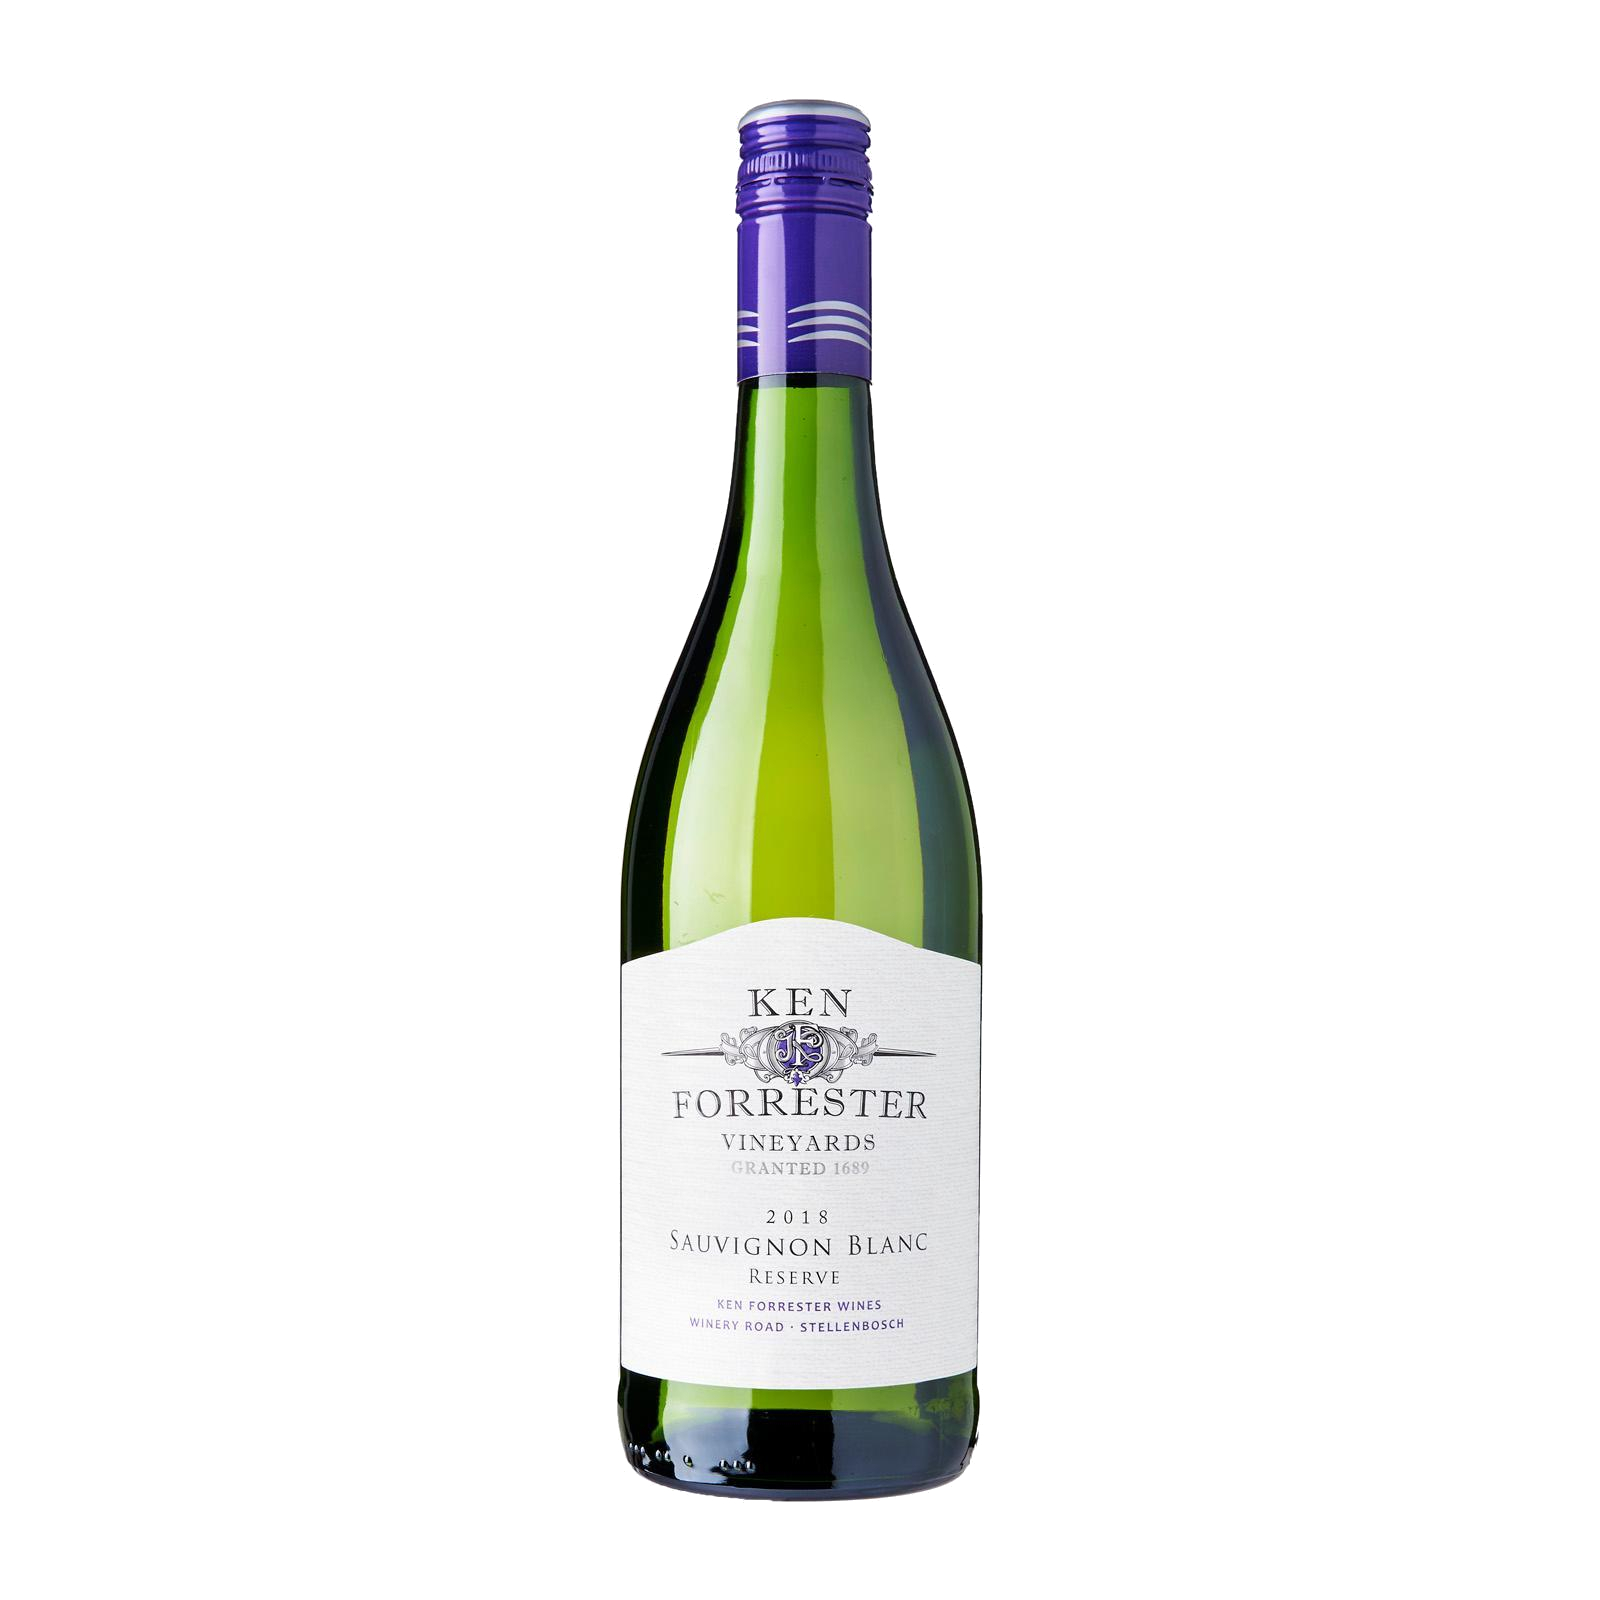 Ken Forrester Sauvignon Blanc Reserve 2018 White Wine – Stellenbosch, South Africa